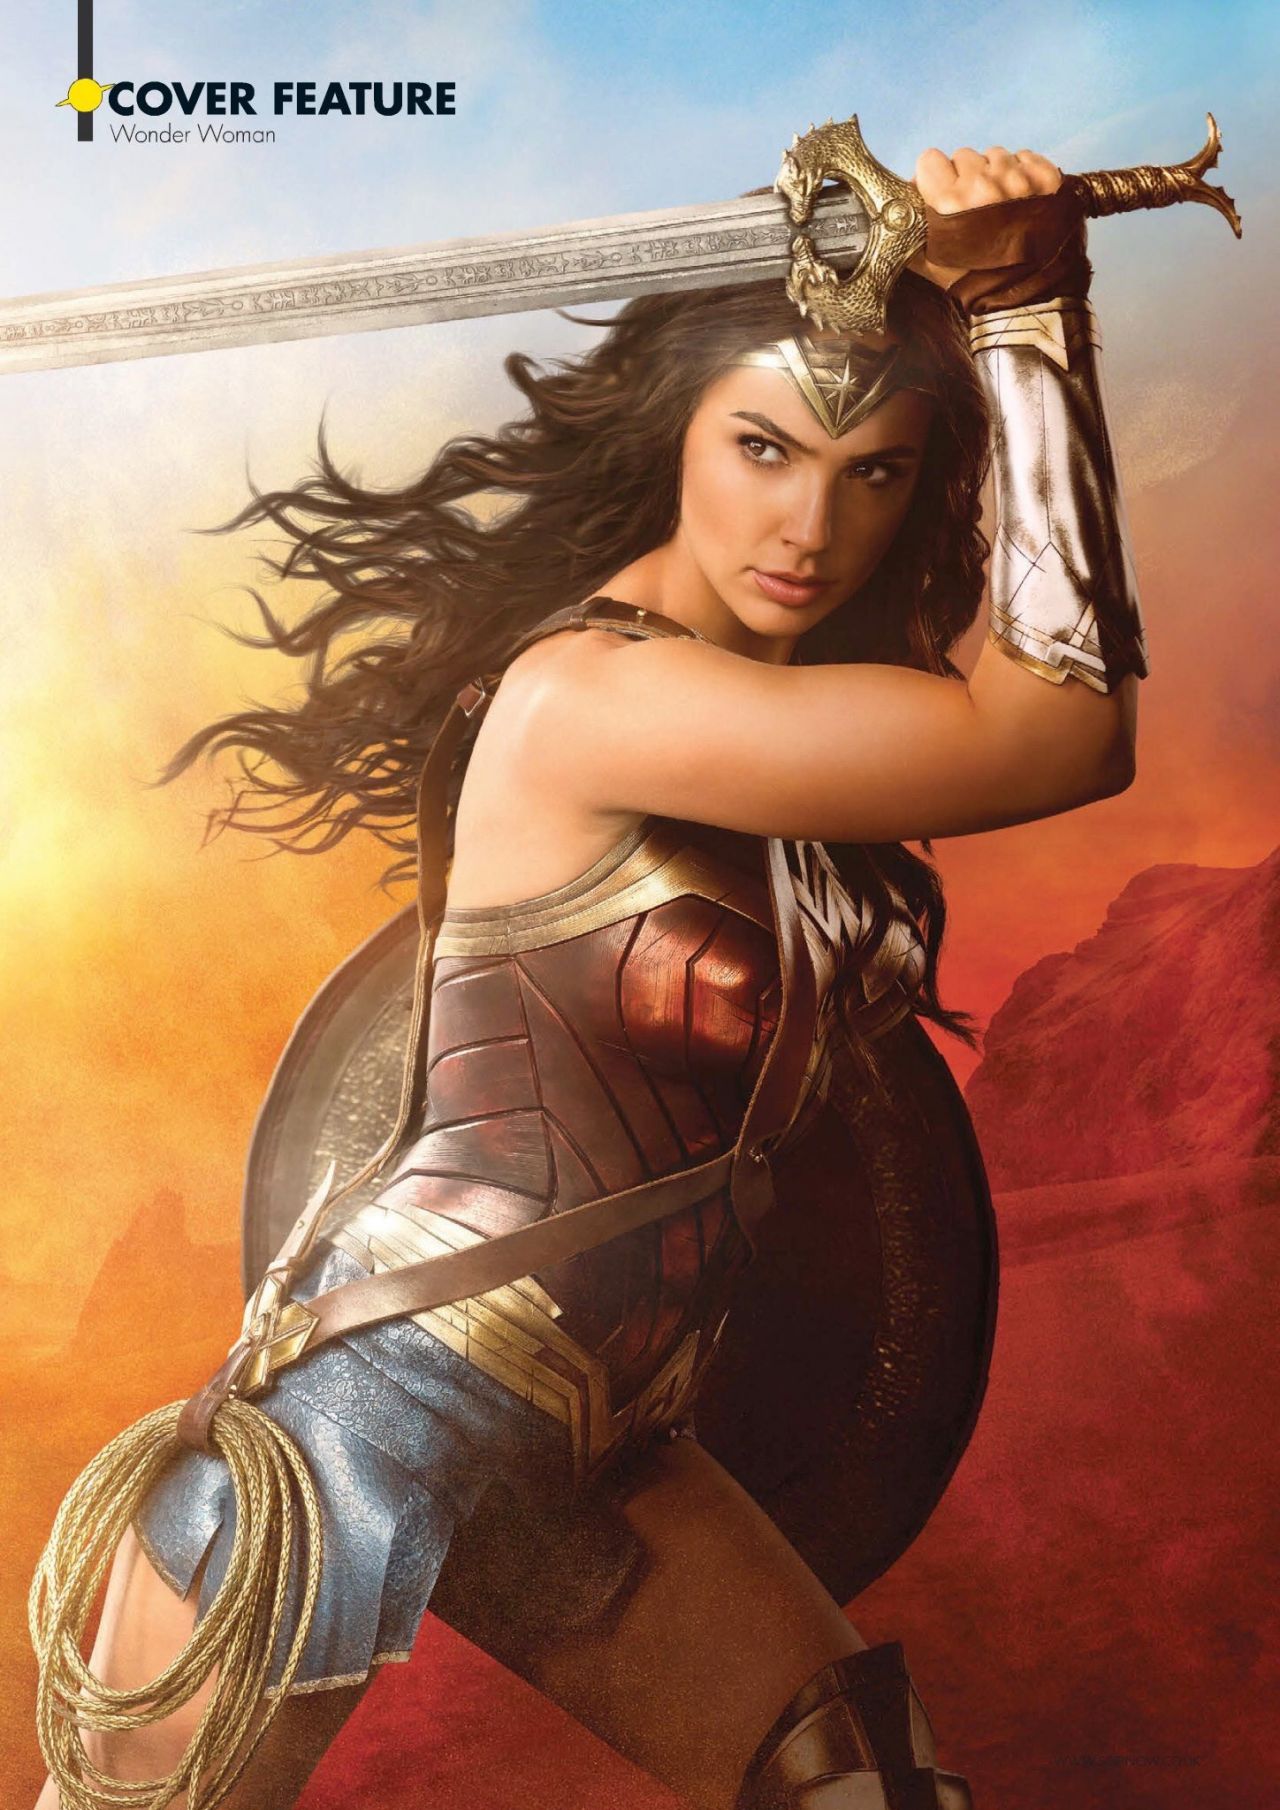 Gal Gadot Wonder Woman Pics And Posters 05 23 2017